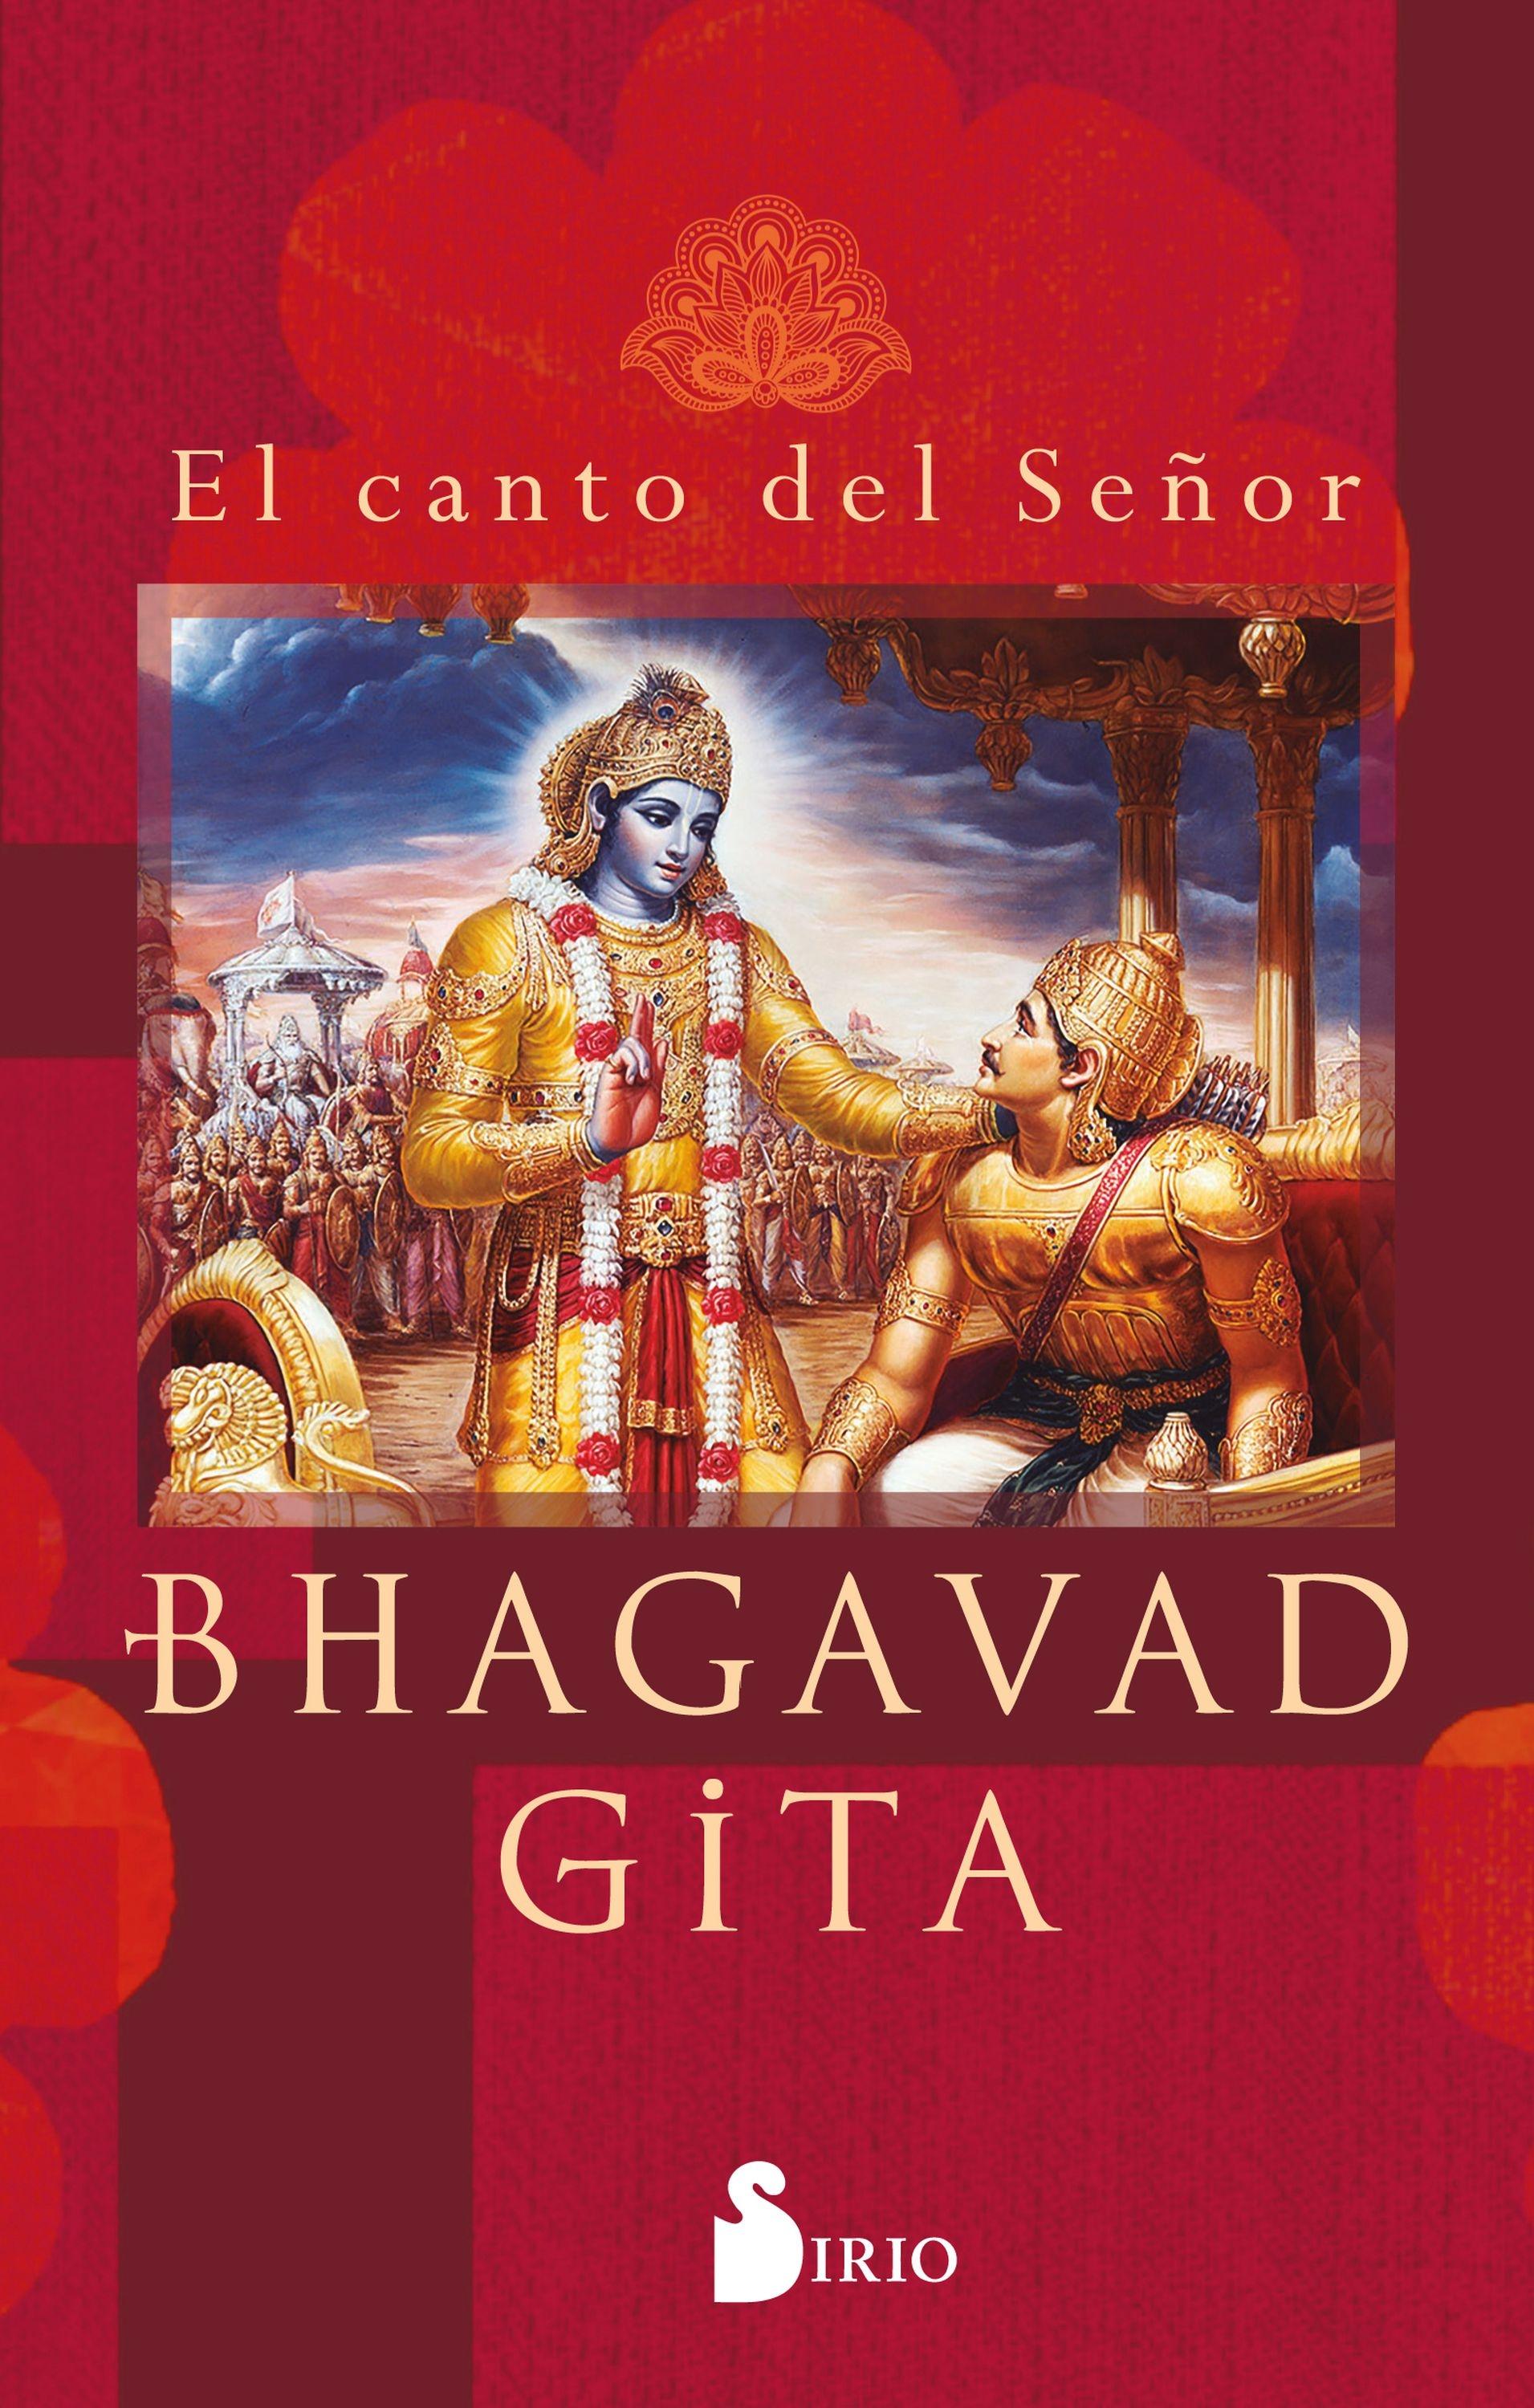 Bhagavad Gita "El canto del señor"